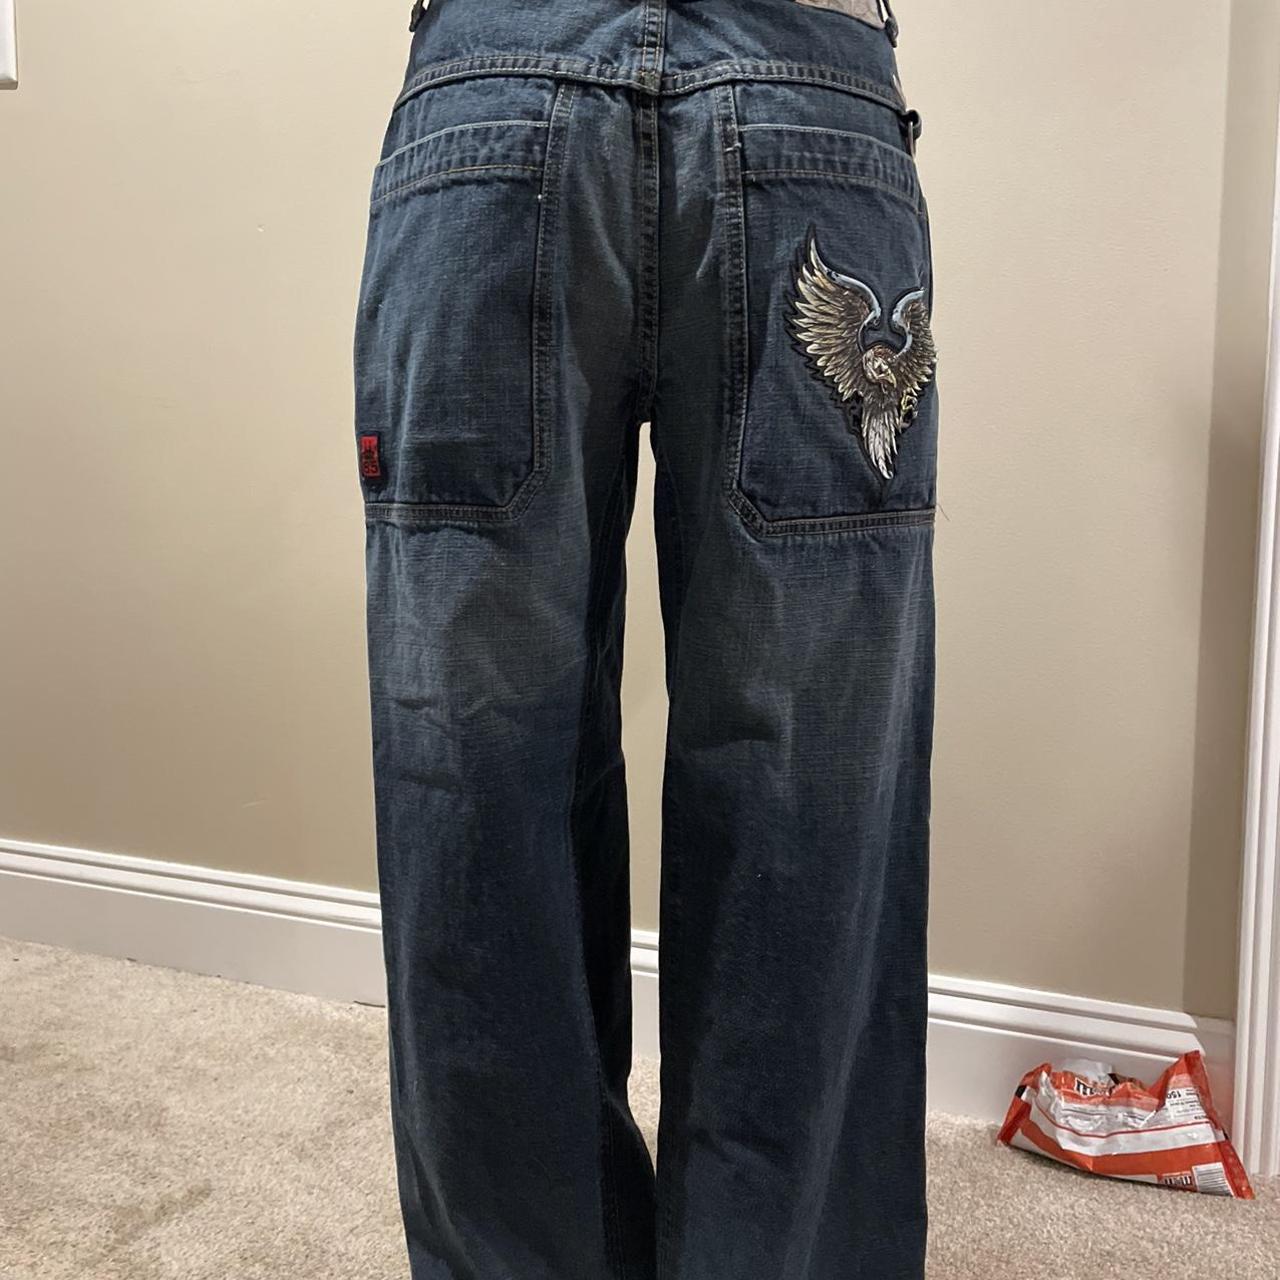 28 Inseam Pants for Men – Under 5'10